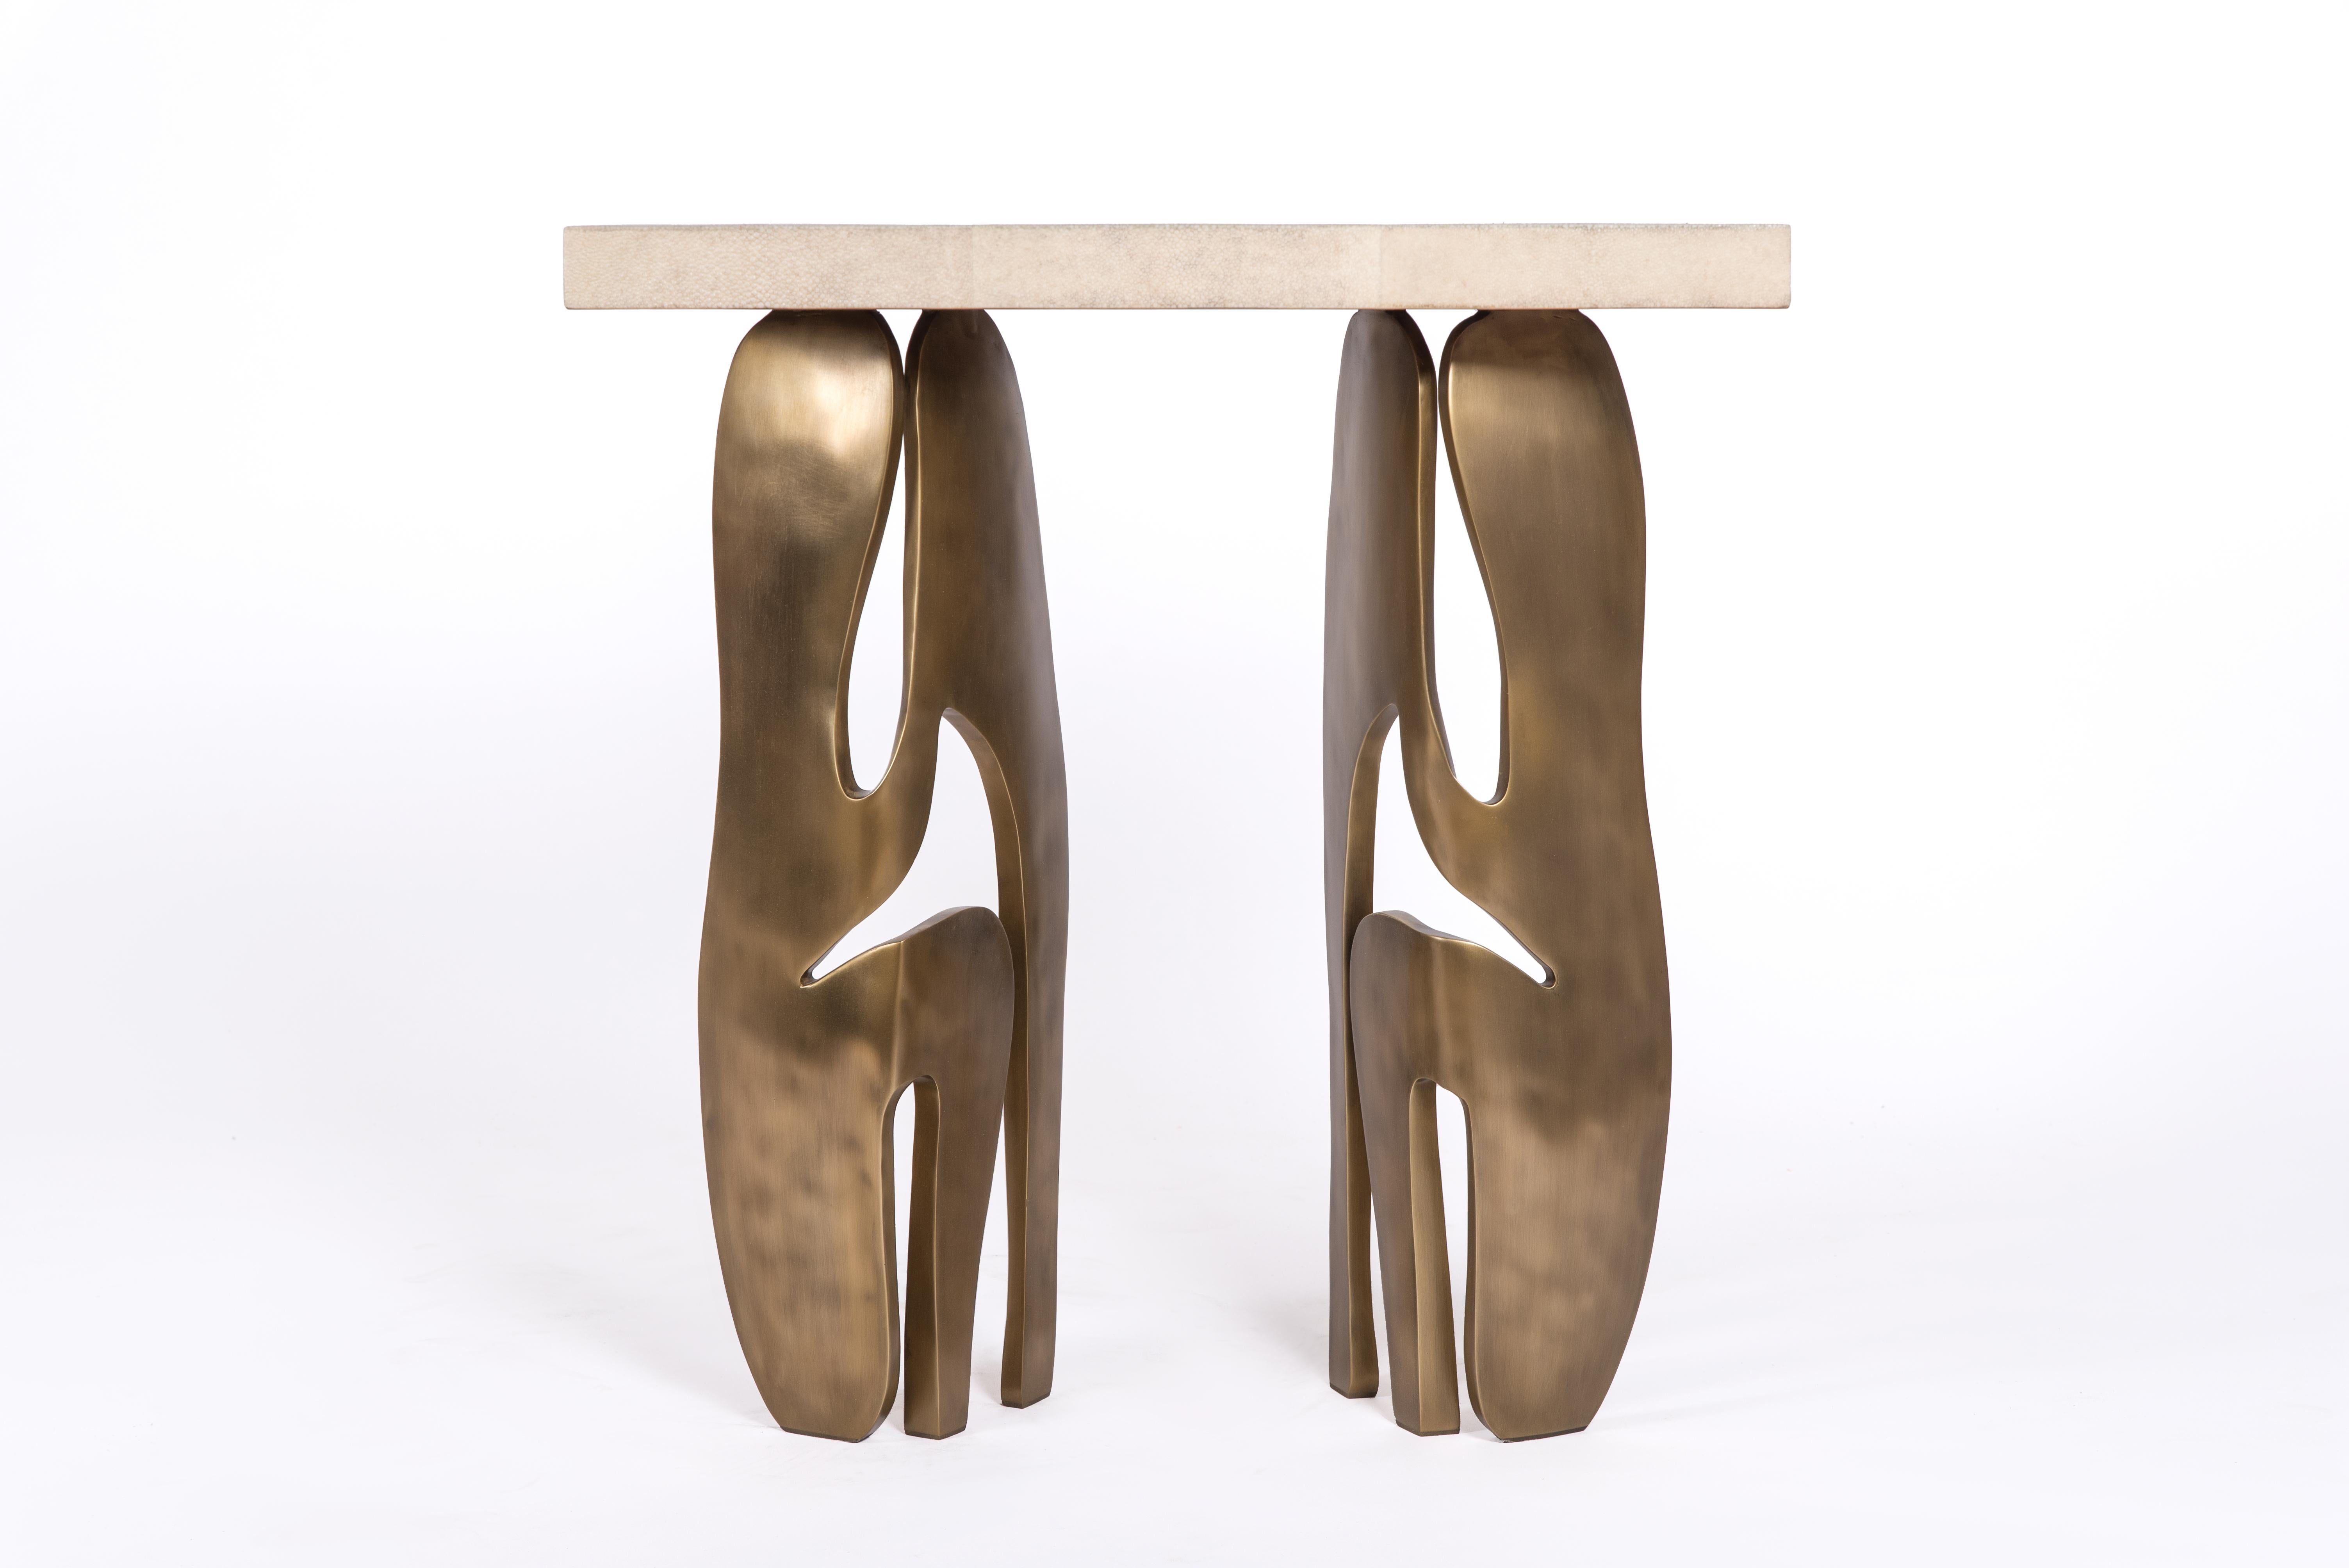 La table d'appoint rectangle Metropolis de R&Y Augousti est à la fois spectaculaire et organique grâce à son design unique. Le plateau en marqueterie de galuchat crème repose sur une paire de pieds éthérés et sculpturaux en laiton bronze-patine.